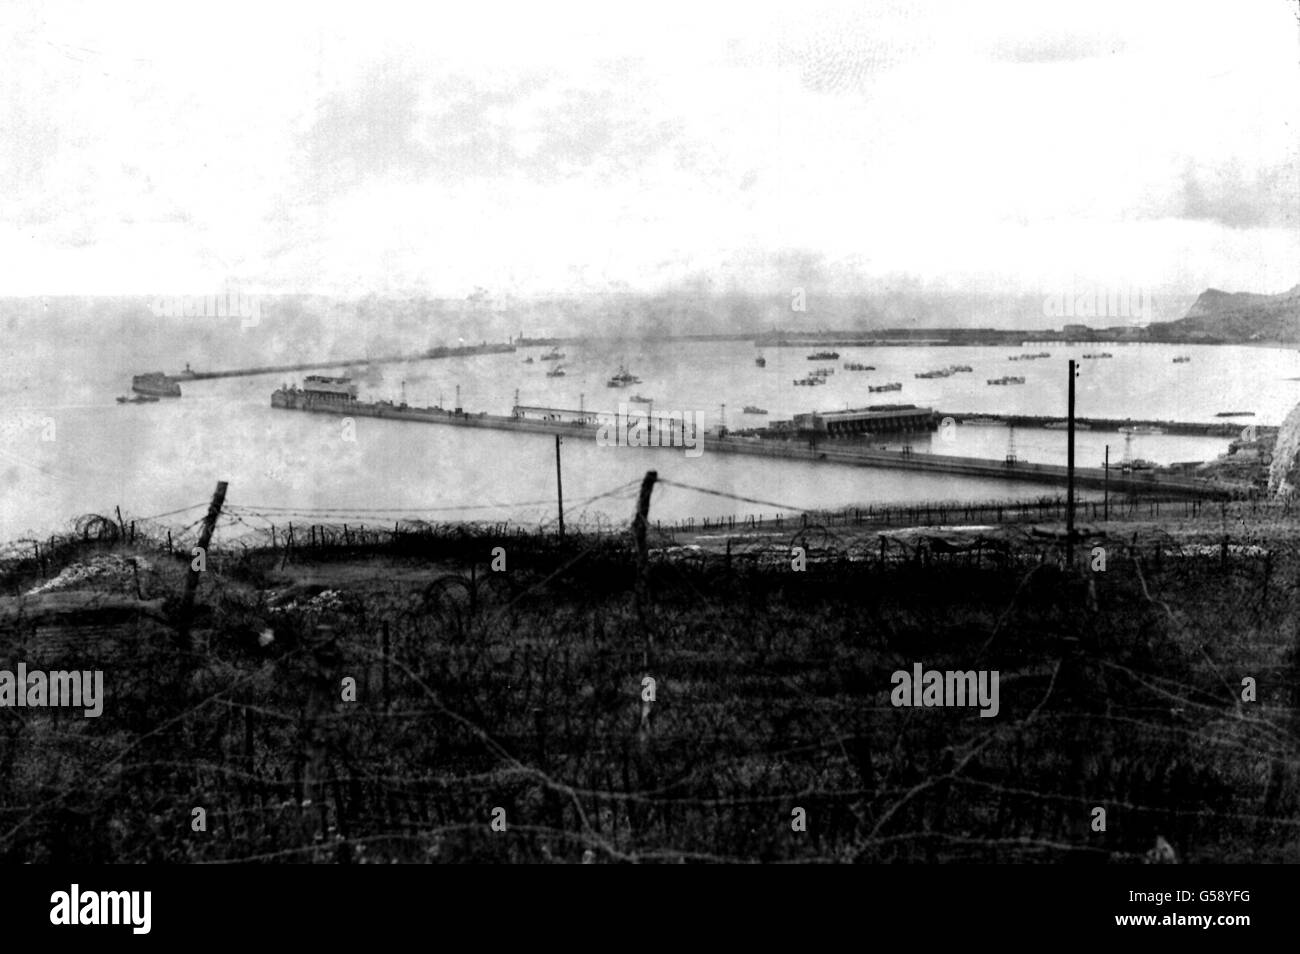 1944: Il fumo si sposta attraverso il porto di dover, Kent. In primo piano sono le cinghie di filo spinato utilizzate come parte delle difese costiere britanniche. Si possono vedere sia imbarcazioni navali che civili. Foto parte della collezione PA della seconda Guerra Mondiale. Foto Stock